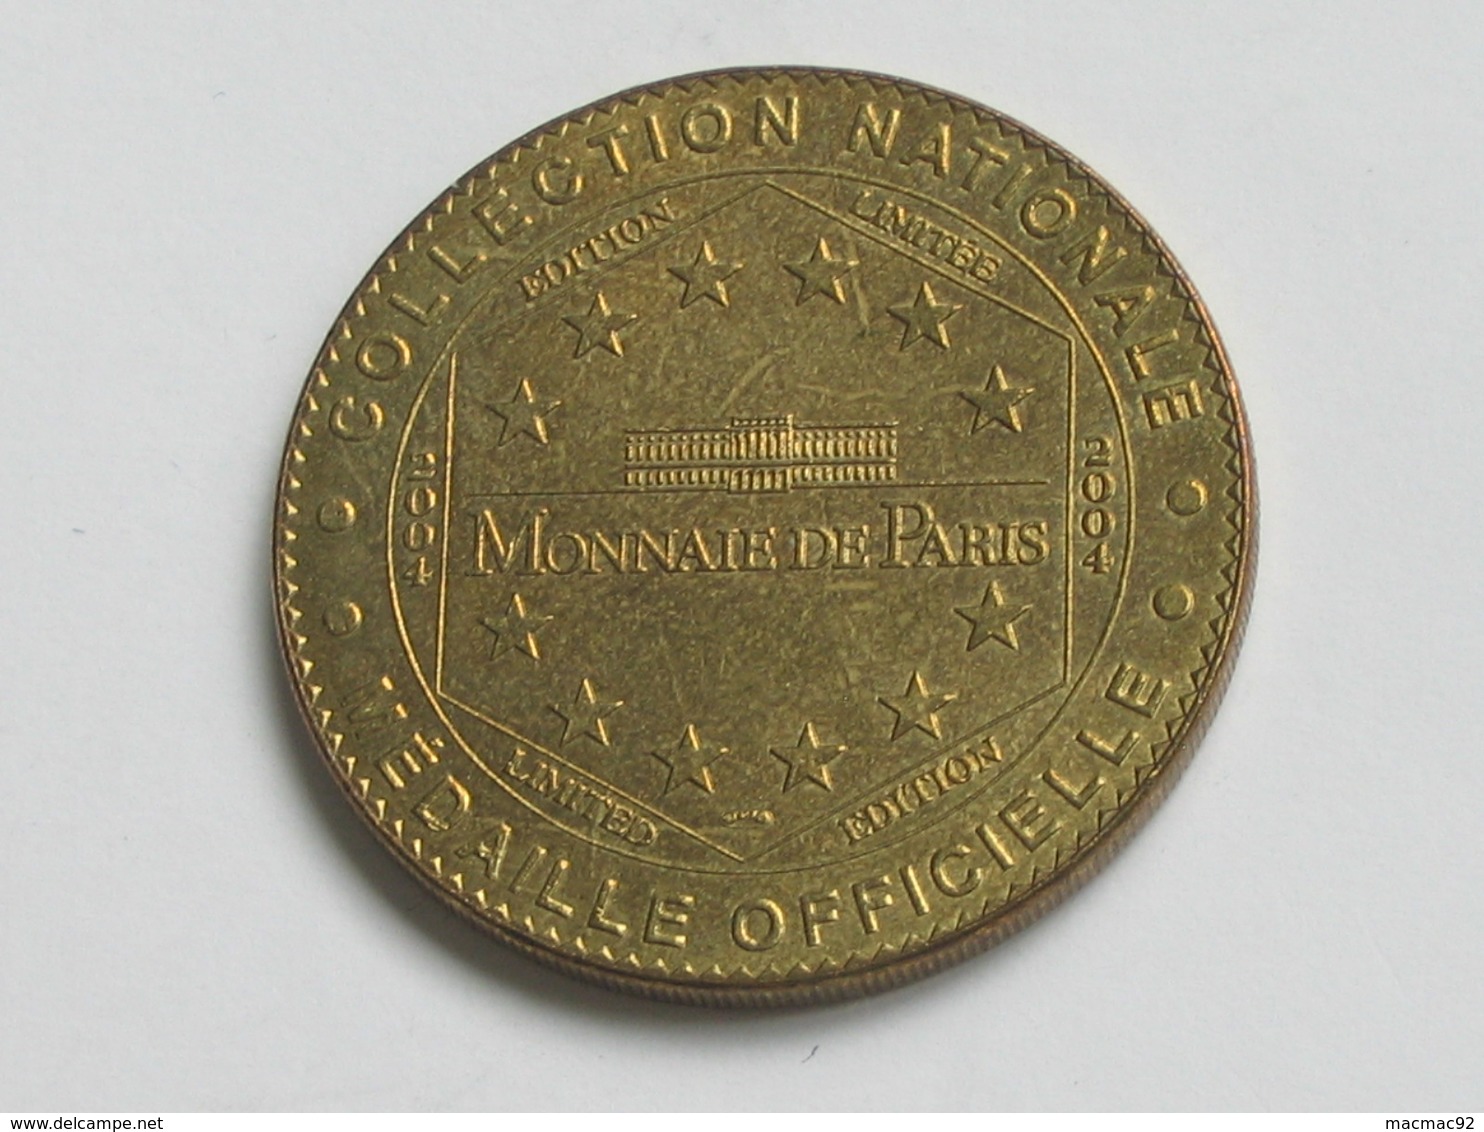 Médaille De La Monnaie De Paris - FORT DE VAUX - MEUSE 1918 -  2004 B    **** EN ACHAT IMMEDIAT  **** - 2004